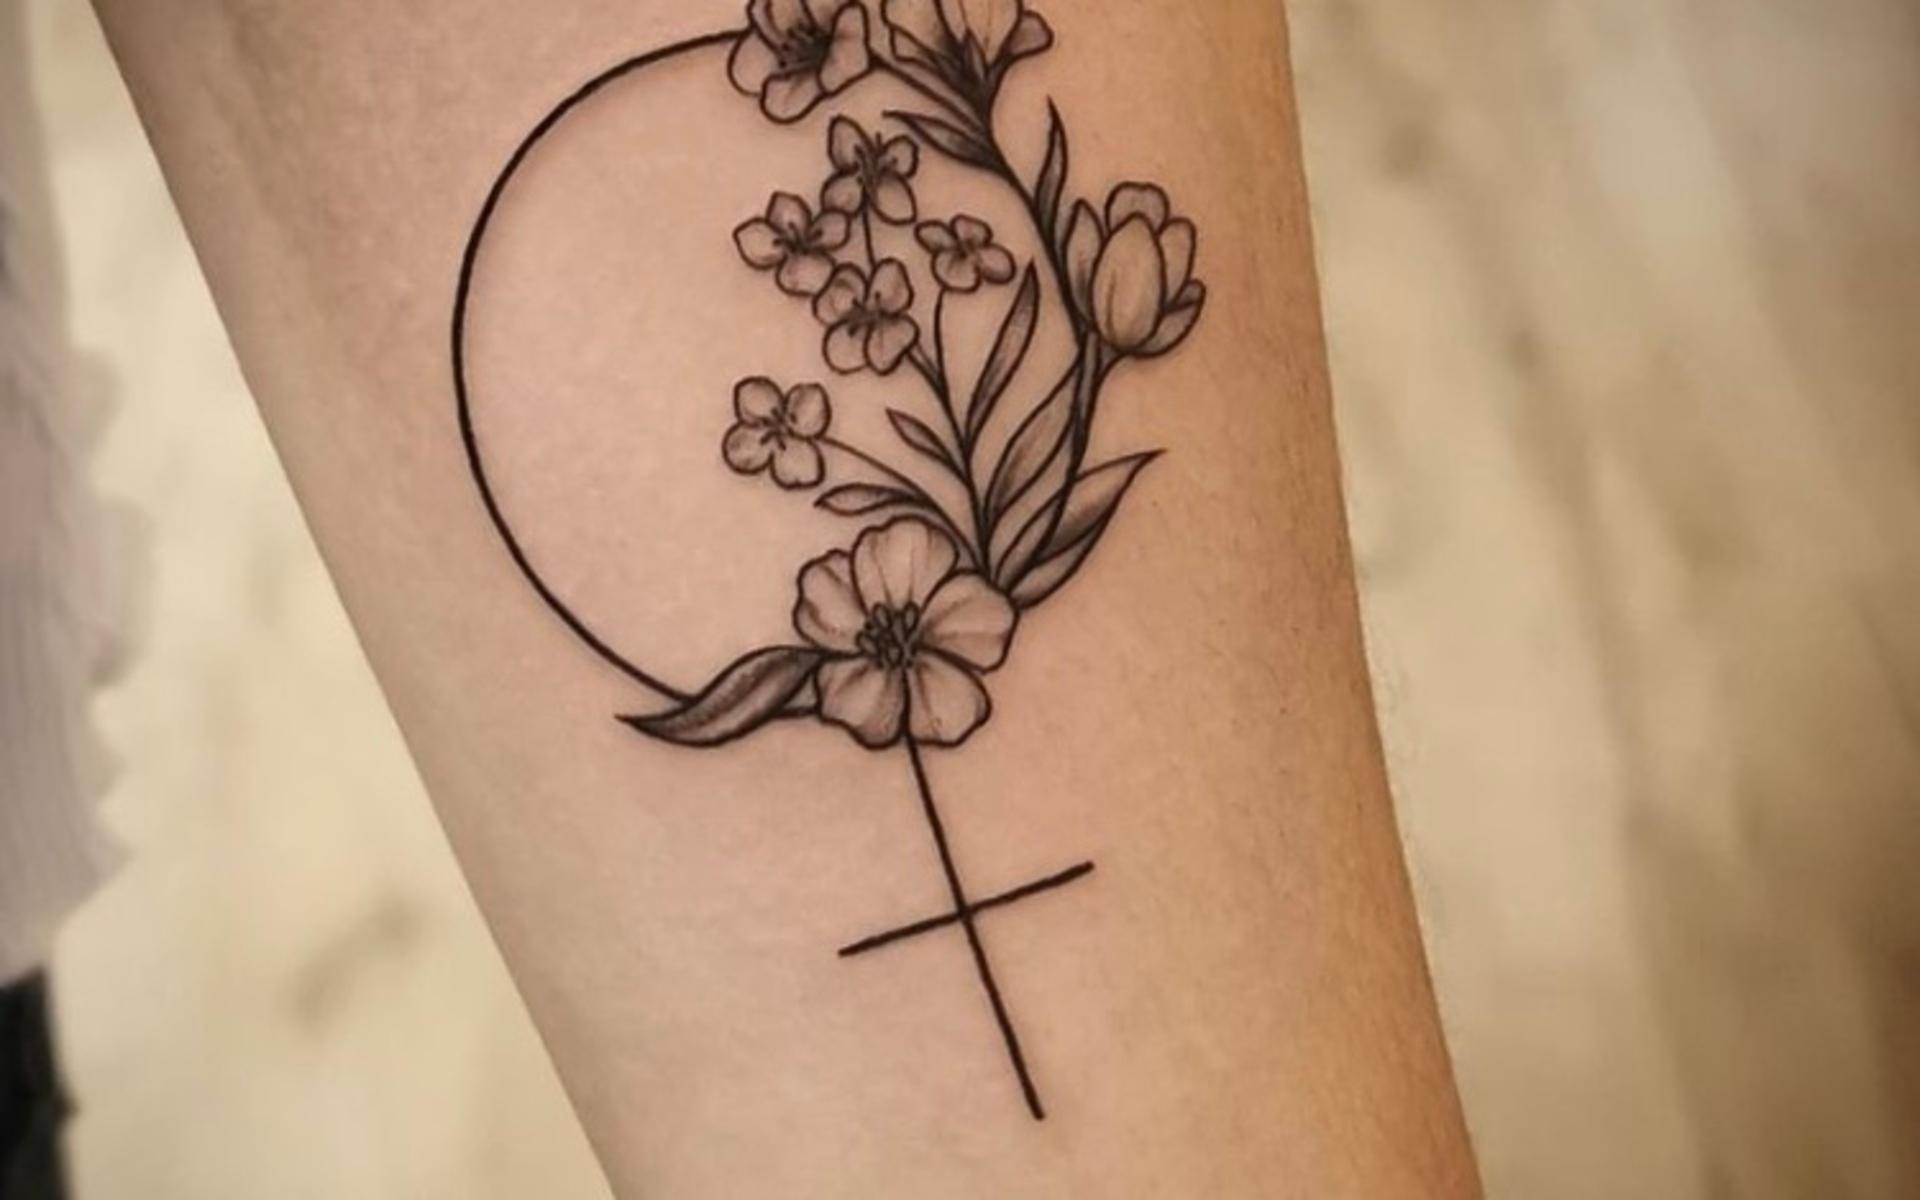 Sabina Nordvall: ”Min tatuering tänkte jag länge på. Fick bli en venussymbol som står för den starka kvinnan, i denna finner man Linblomma, Alyssum och Tulpan. Som symboliserar mina döttrar Tulip, Alyssa och Lin”.